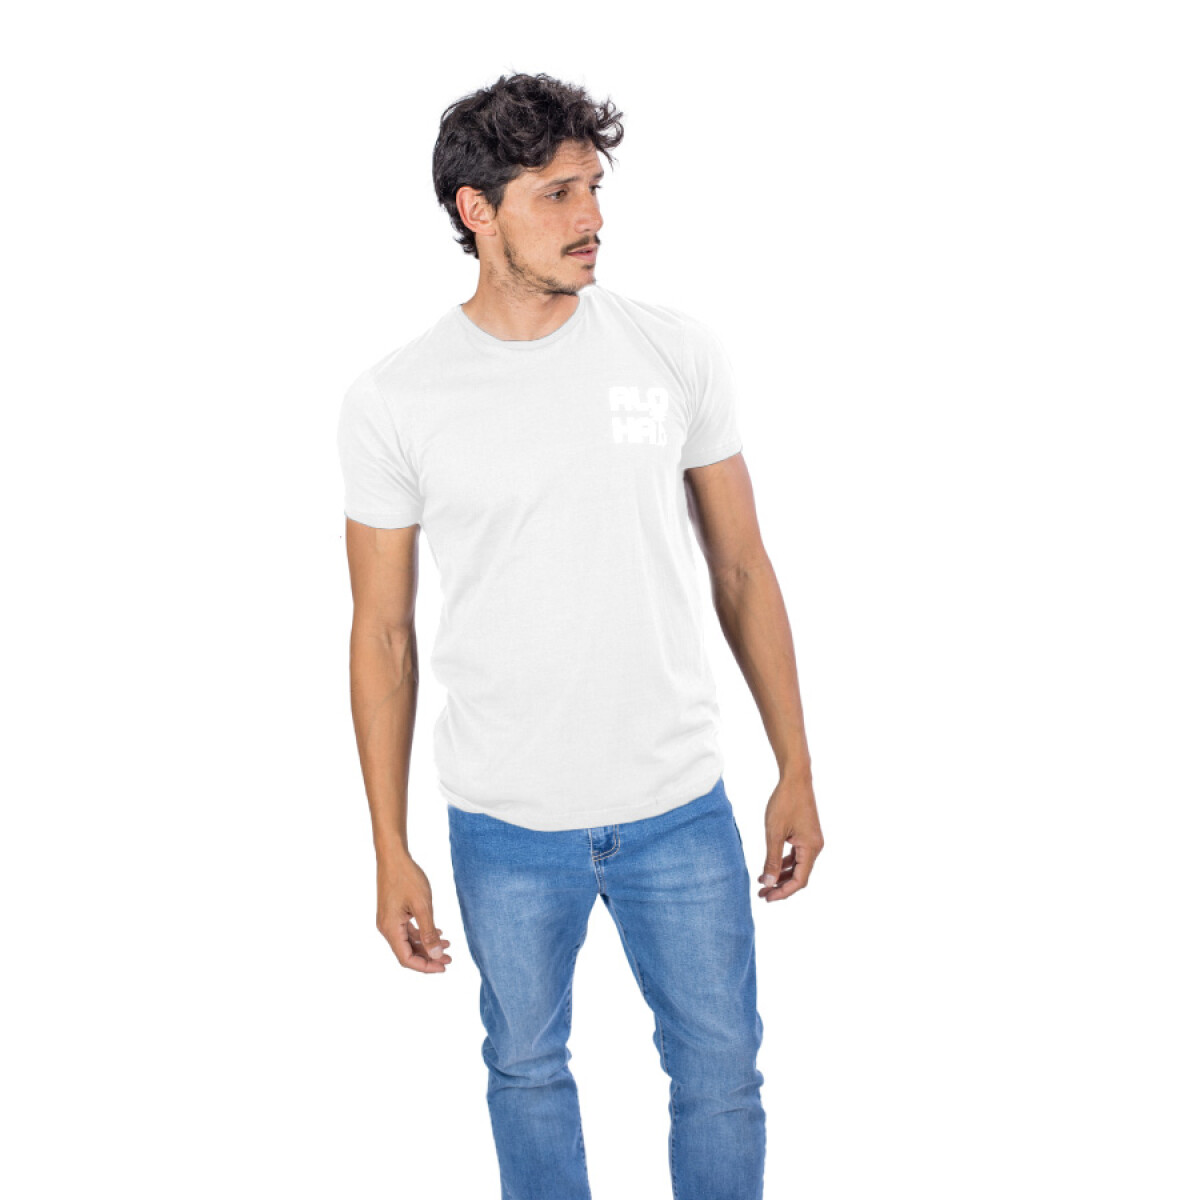 Camiseta de Hombre Aloha Blanca - BLANCO 